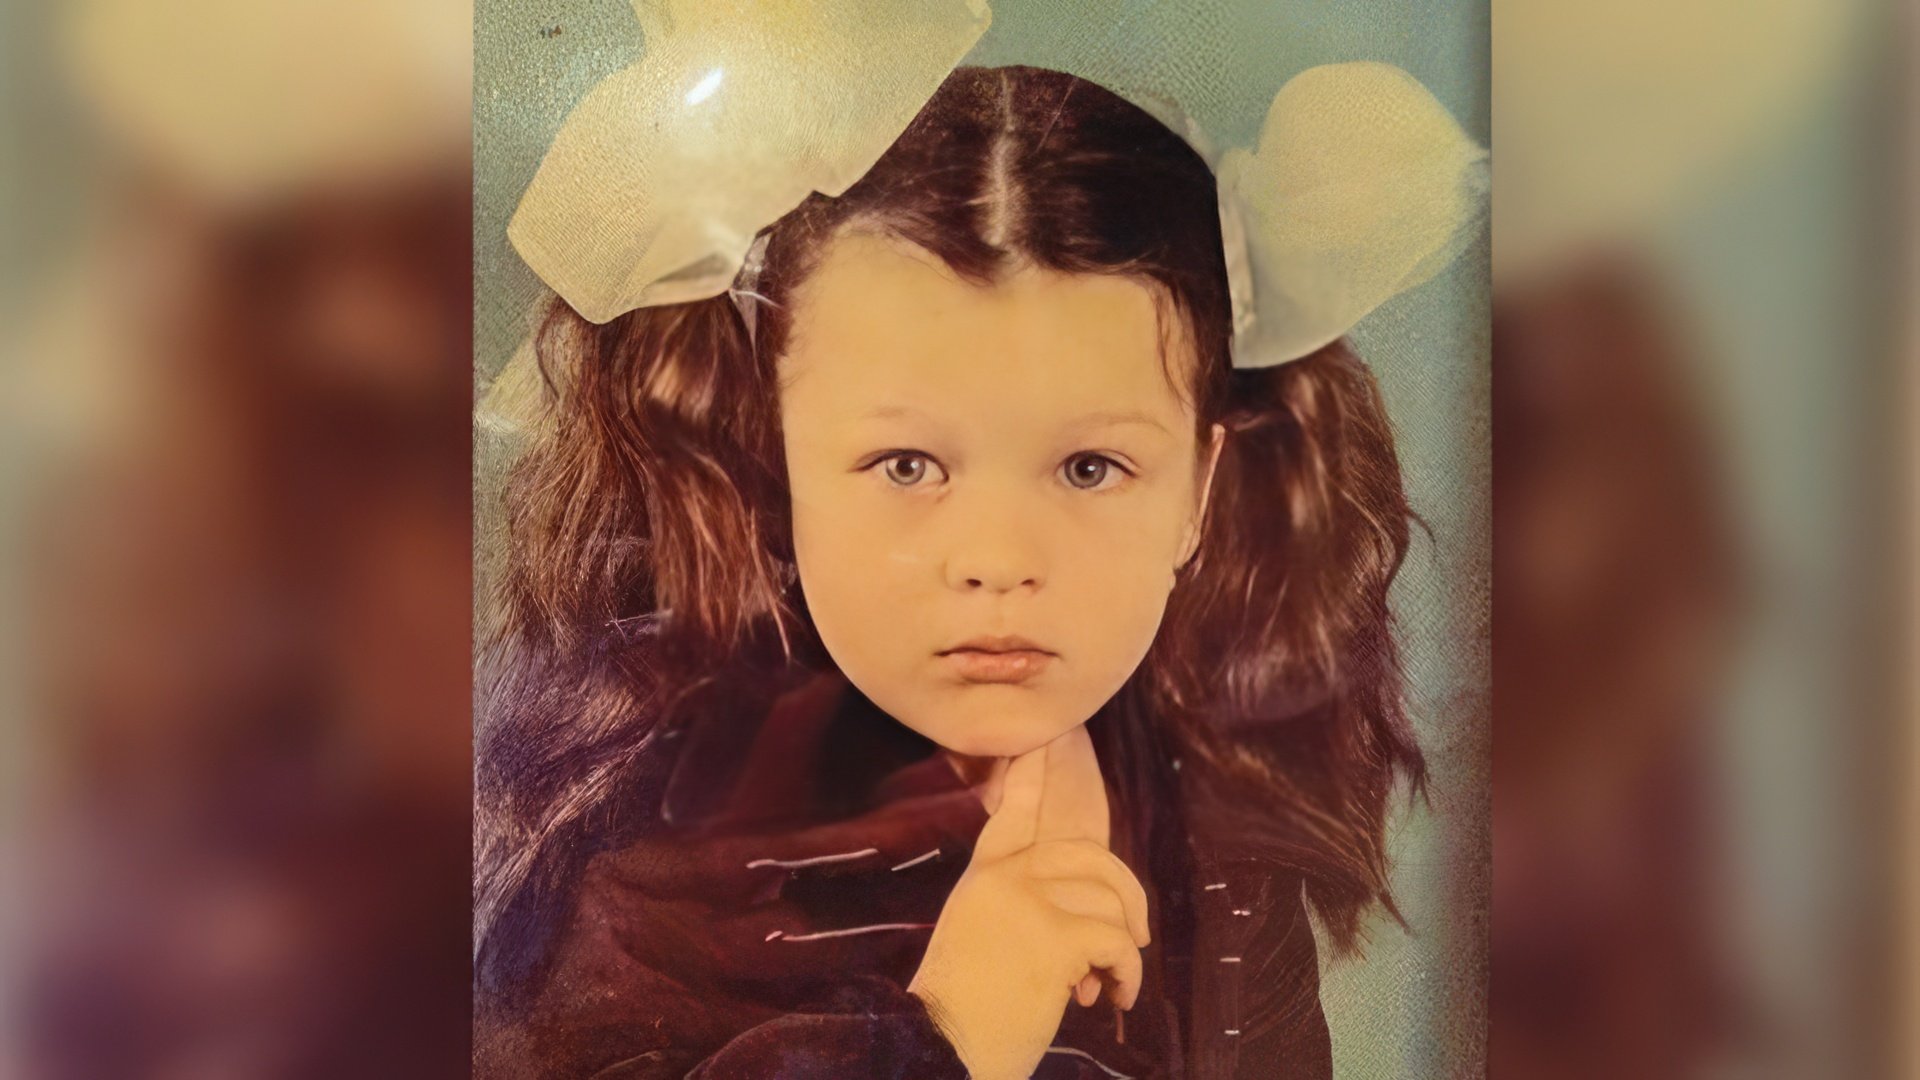 Milla Jovovich as a Child